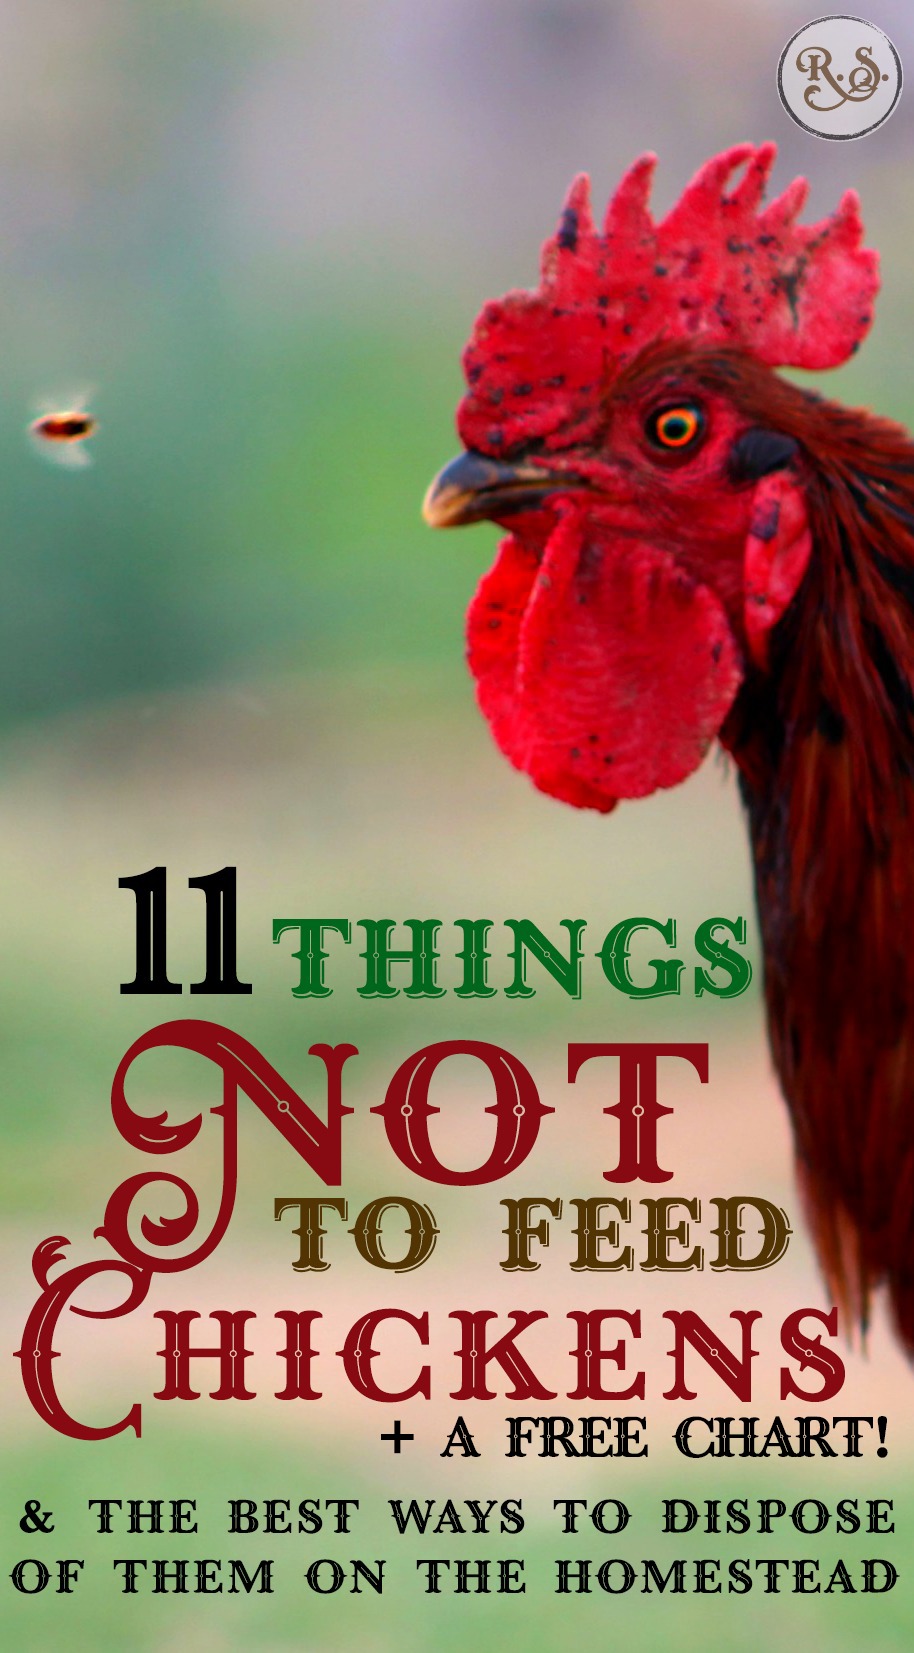 é fácil alimentar galinhas criadas em quintal, mas é preciso saber quais os géneros alimentícios que não devem alimentar galinhas. Depois de aprenderes o que eles não podem comer, aprenderemos da melhor forma que conseguires livrar-te deles.